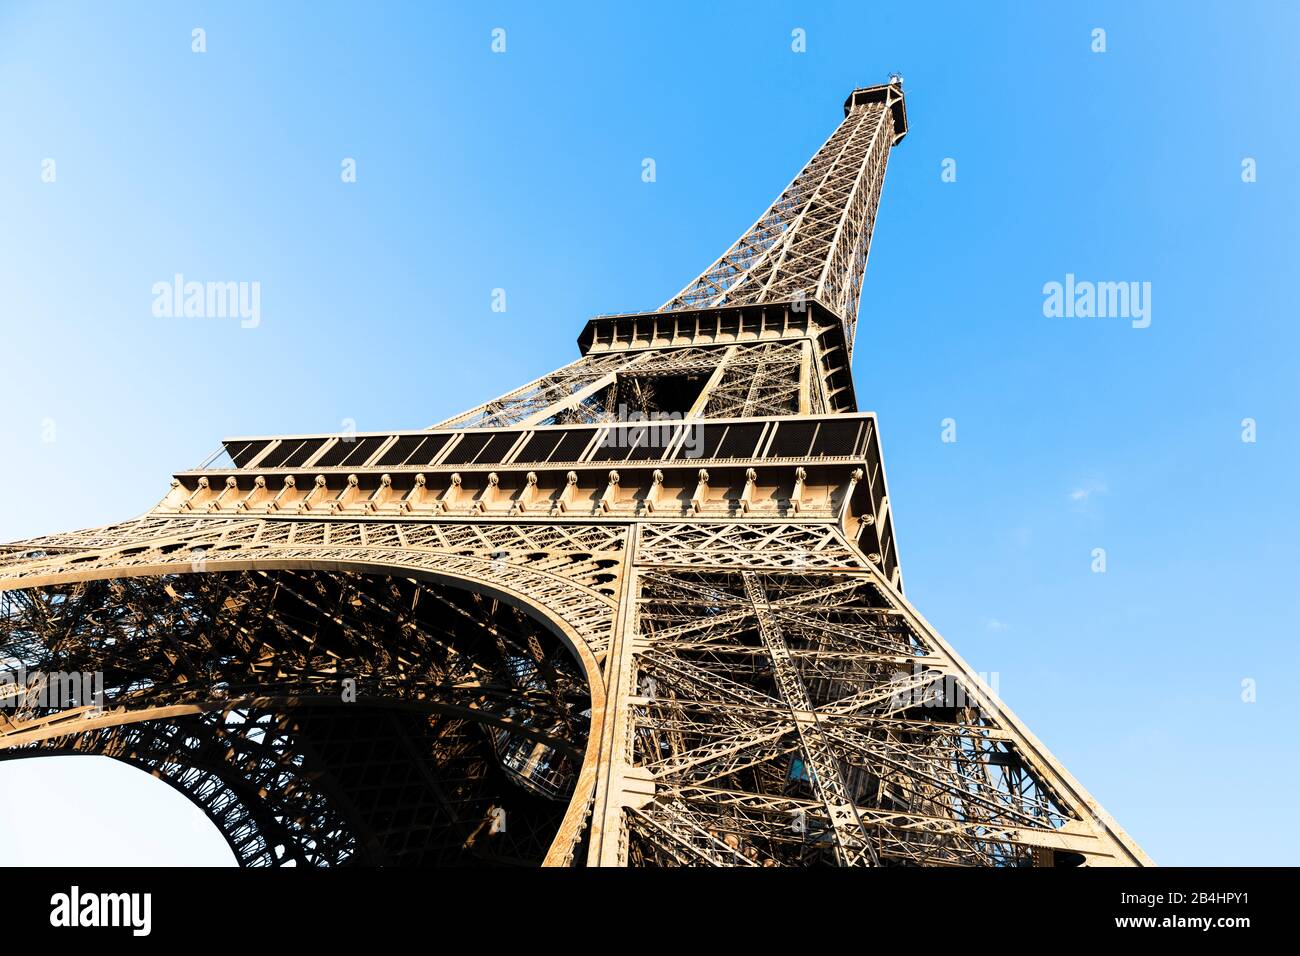 Der Eiffelturm schräg von unten aus gesehen, Paris, Frankreich, Europa Banque D'Images